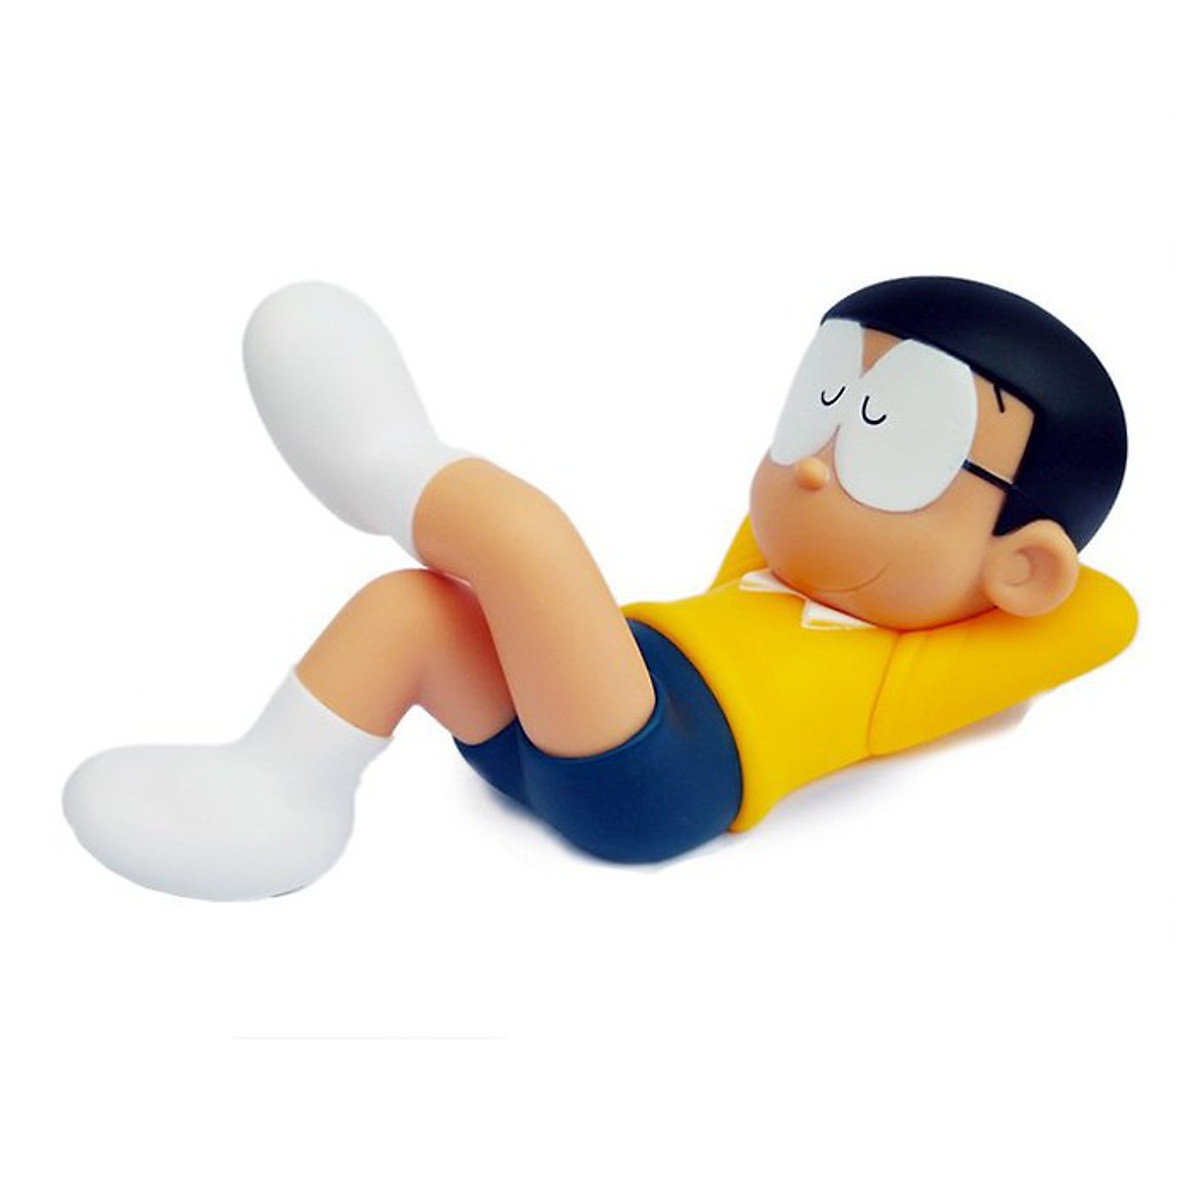 Mua Mô Hình Nhân Vật Nobita Đang Ngủ (Vạn Sự Bình An). Sản Phẩm Làm Từ Nhựa  Pvc Đặc Siêu Xịn Và Đầm Tay. Tại Glory Shop